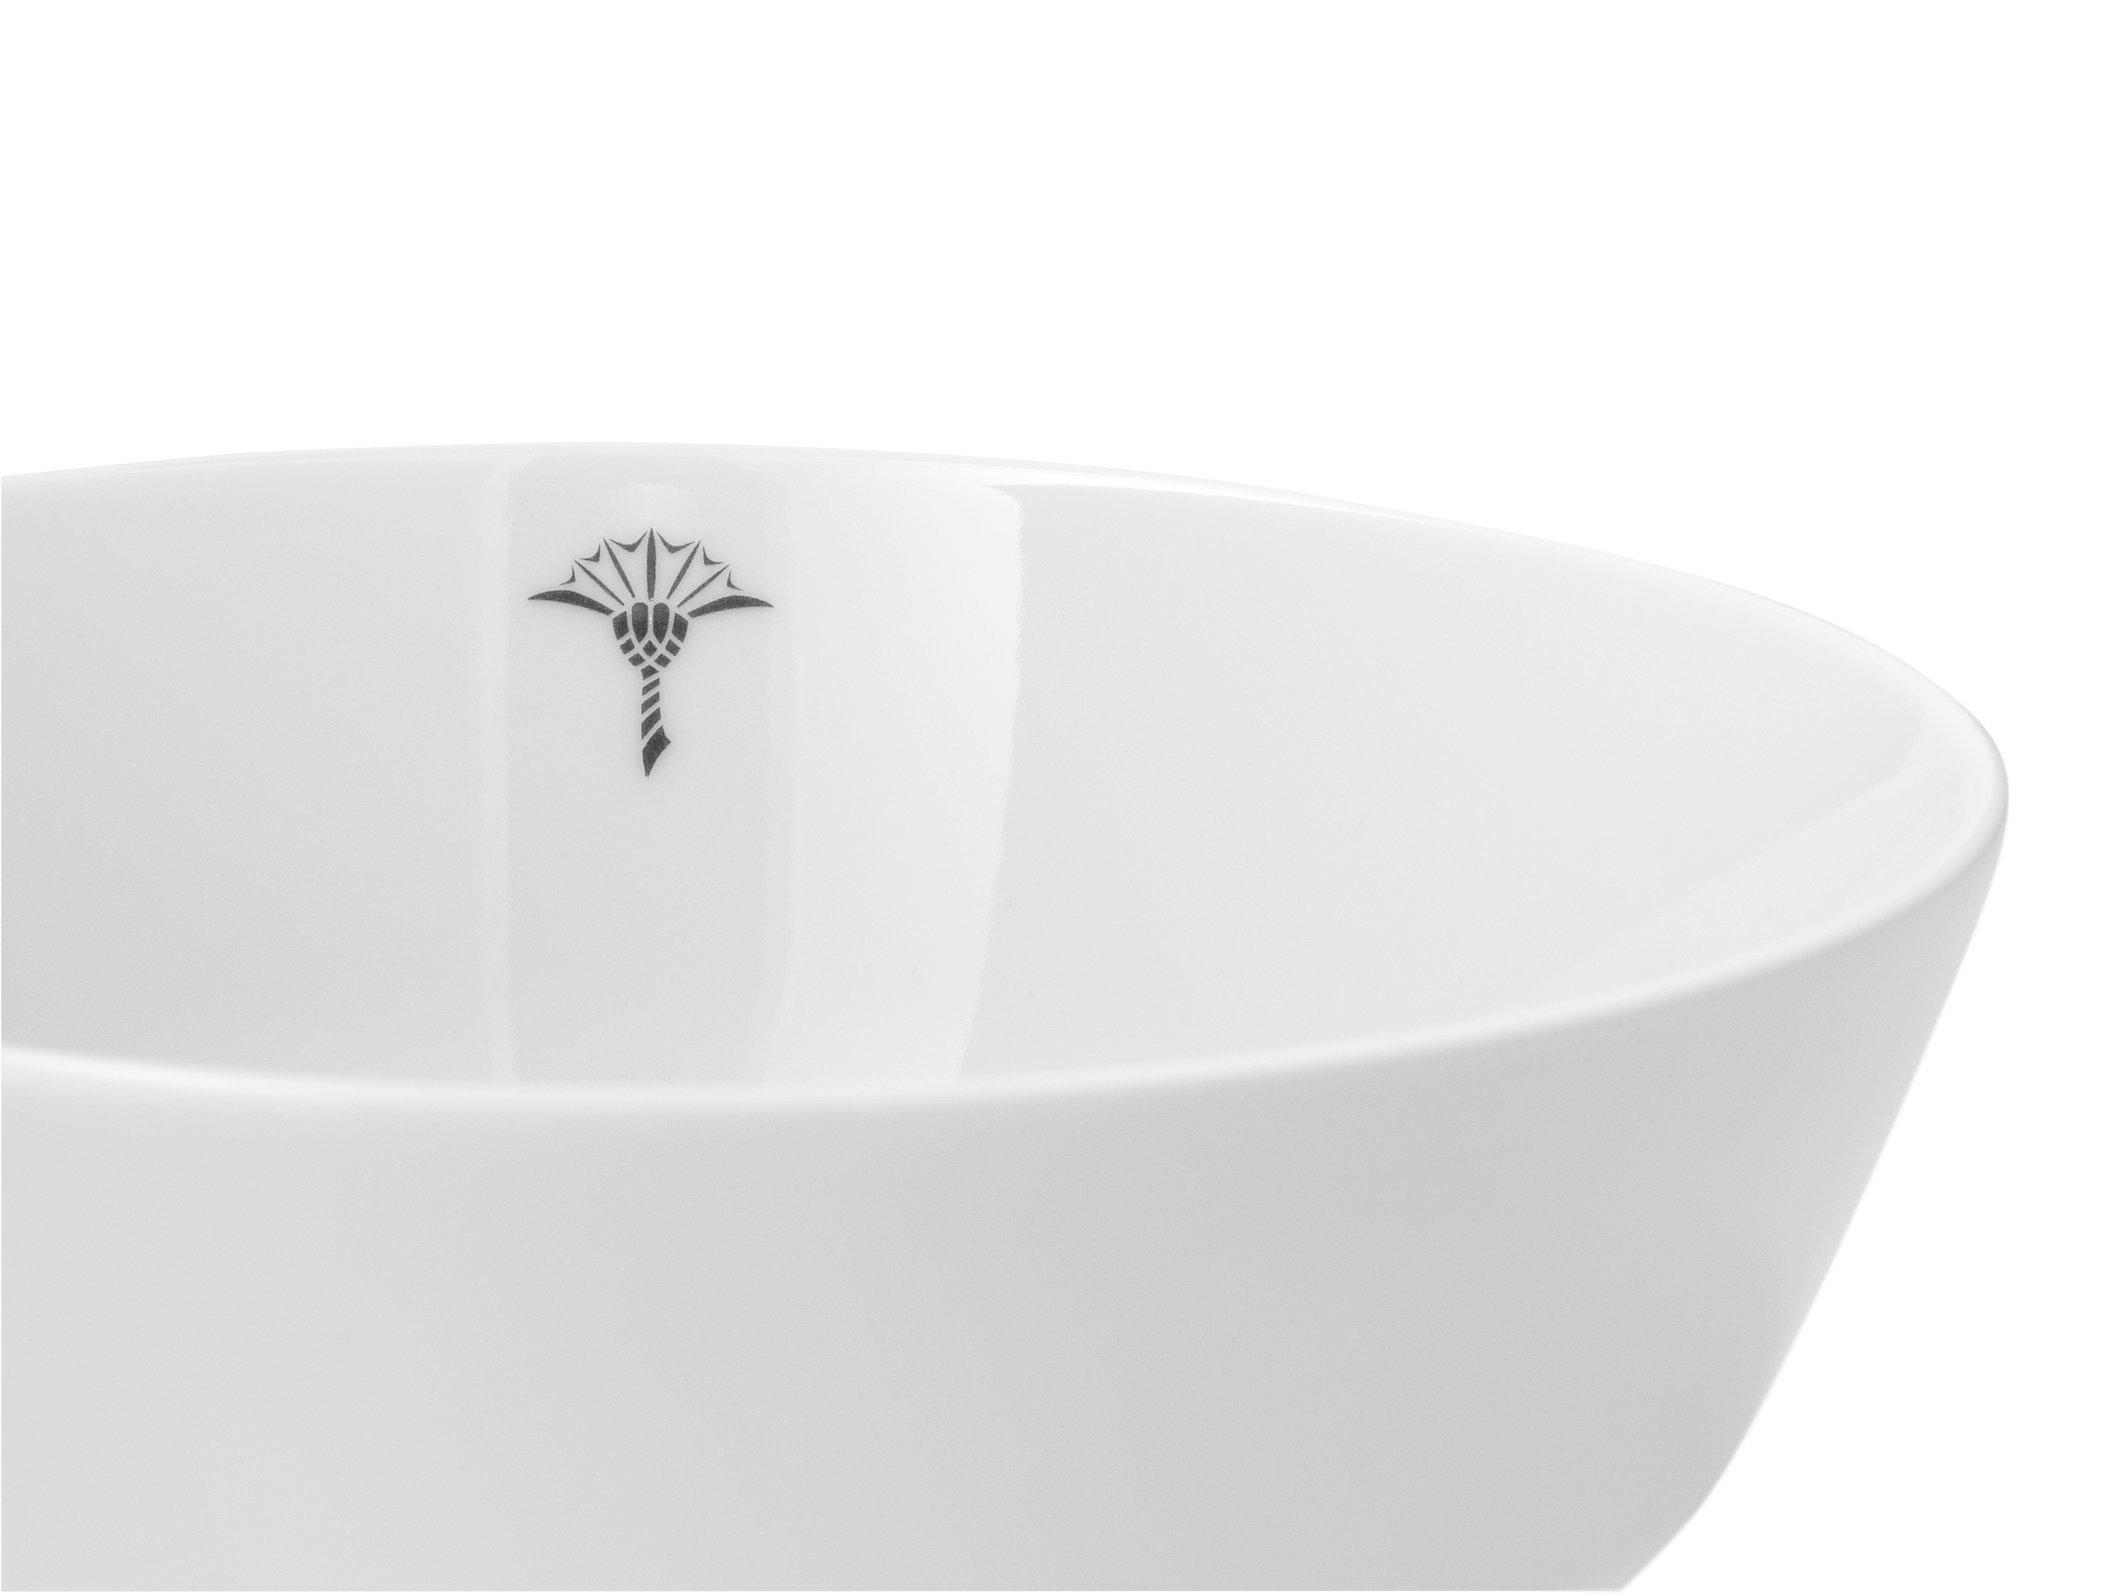 DESSERTSCHALE Single Cornflower 13 cm  - Weiß, Design, Keramik (13cm) - Joop!